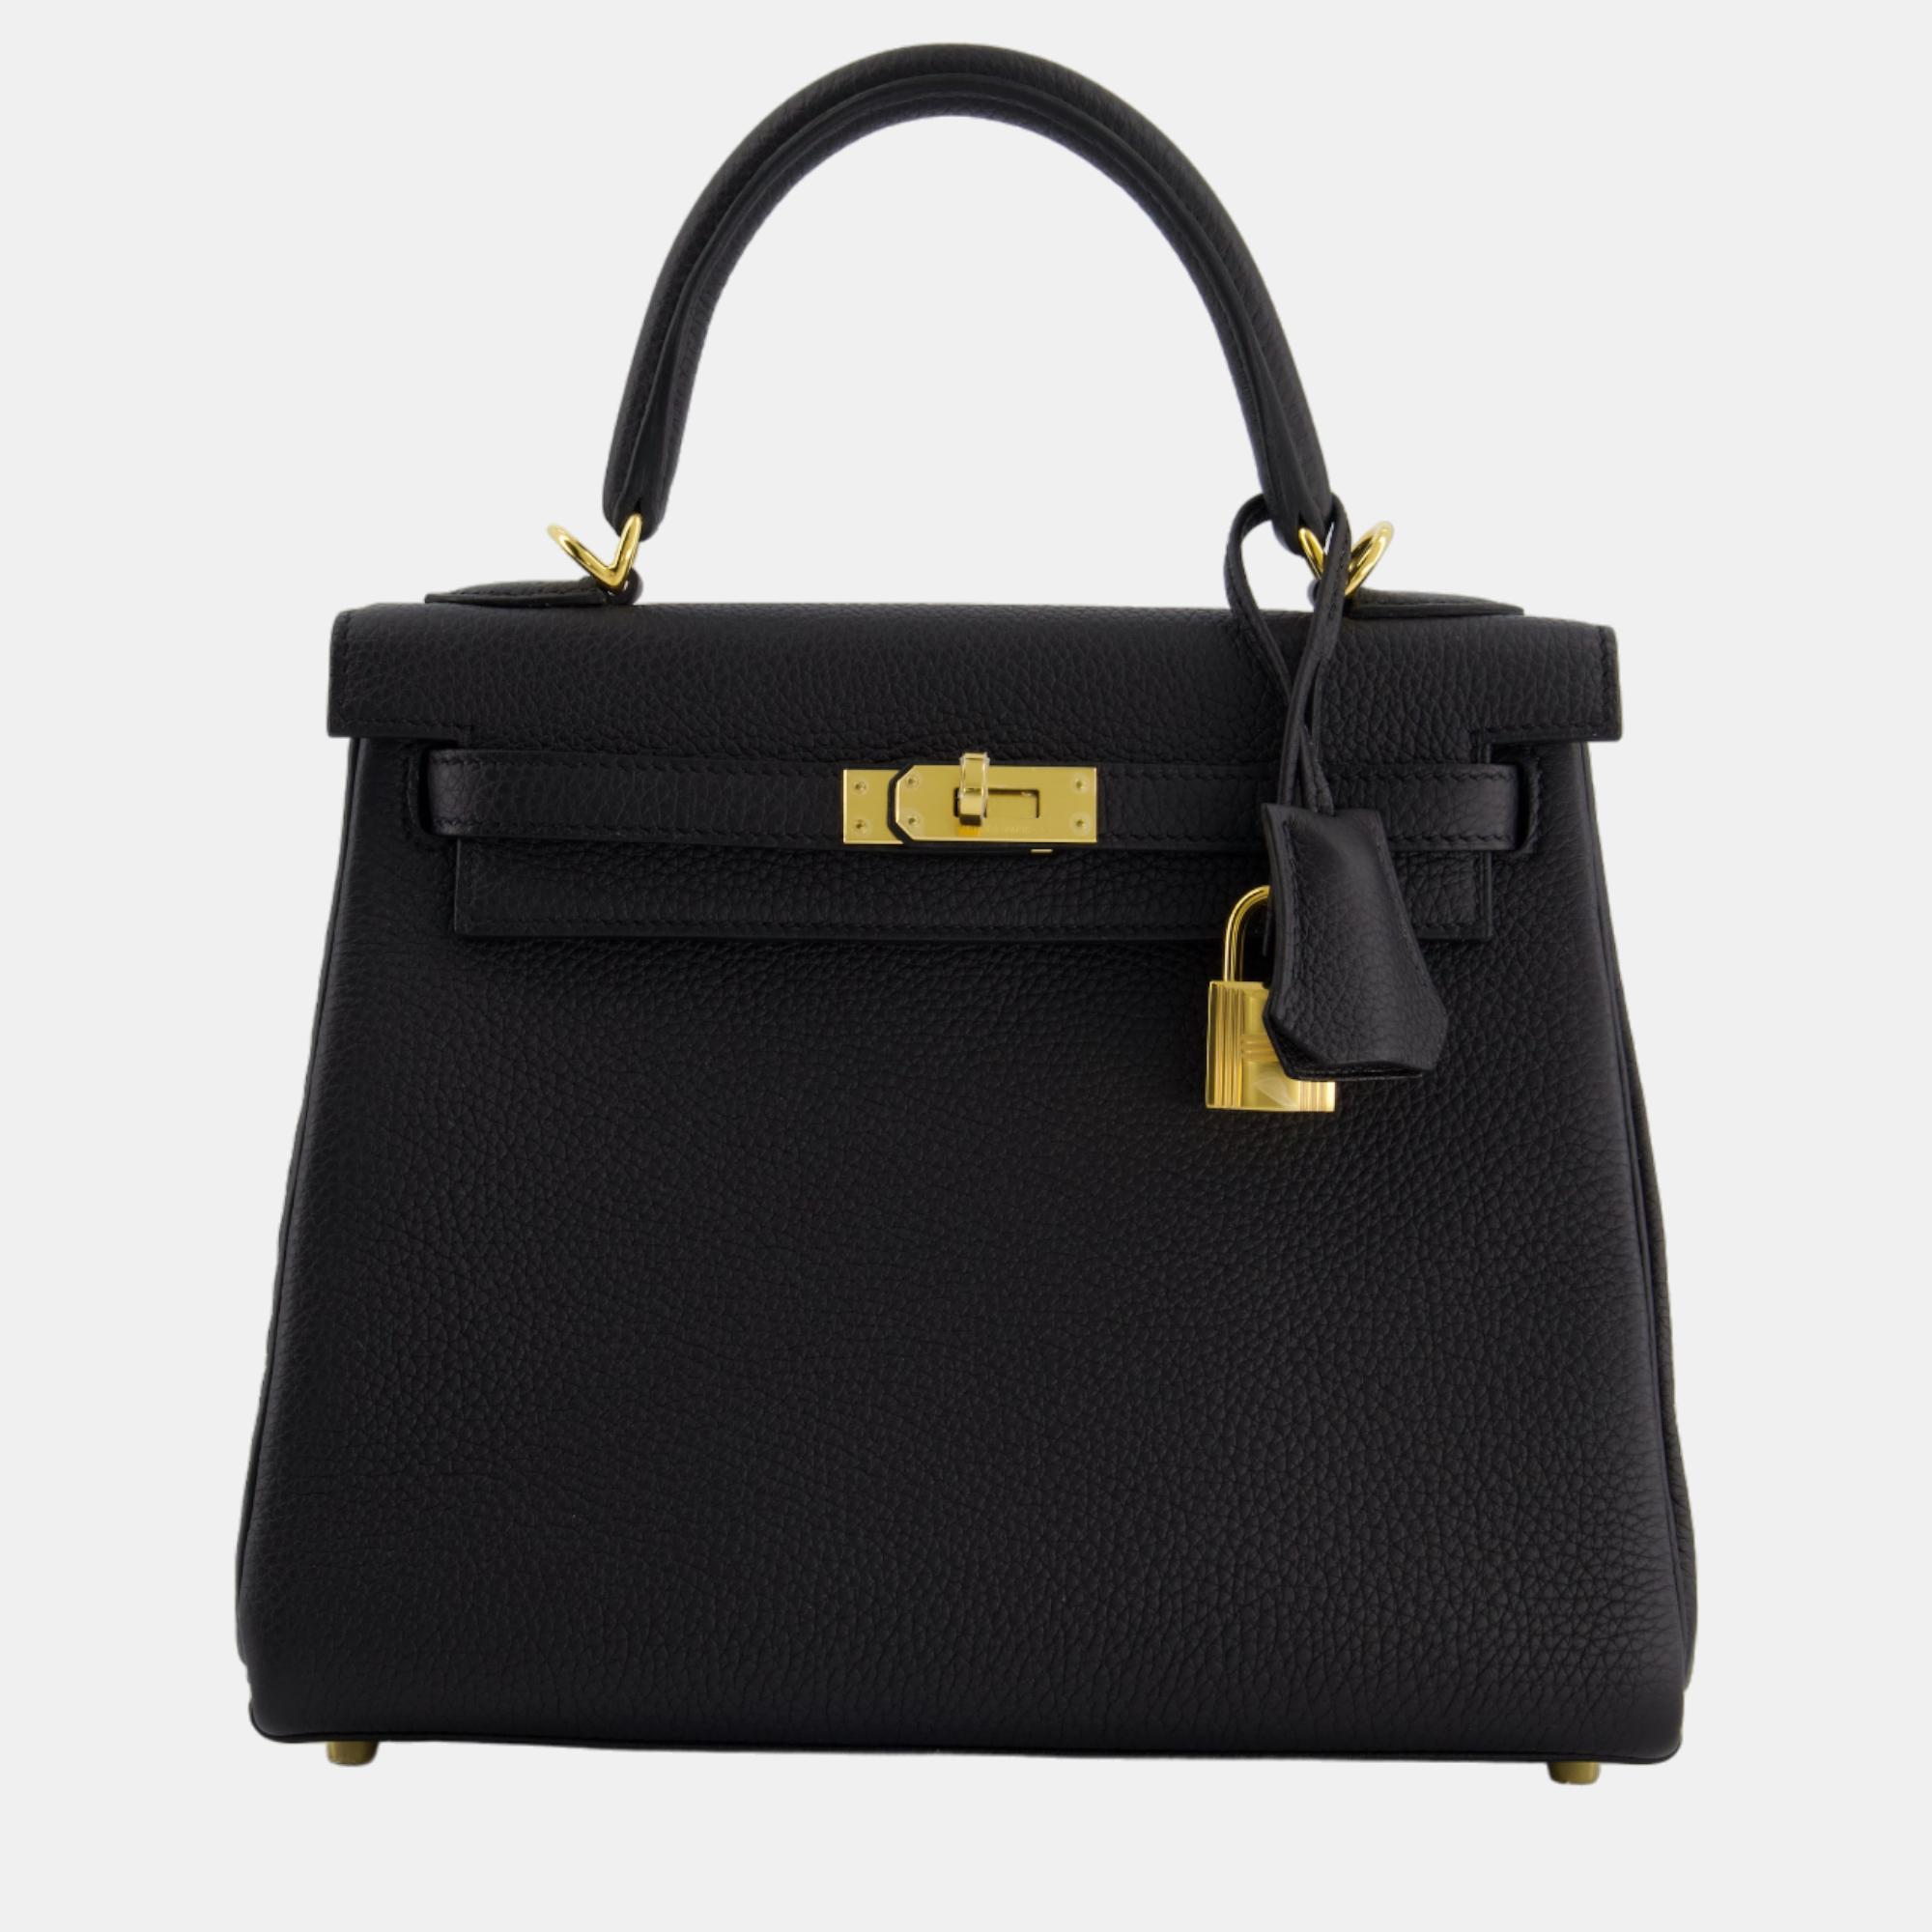 Hermes kelly bag 25cm retourne in black togo leather and gold hardware